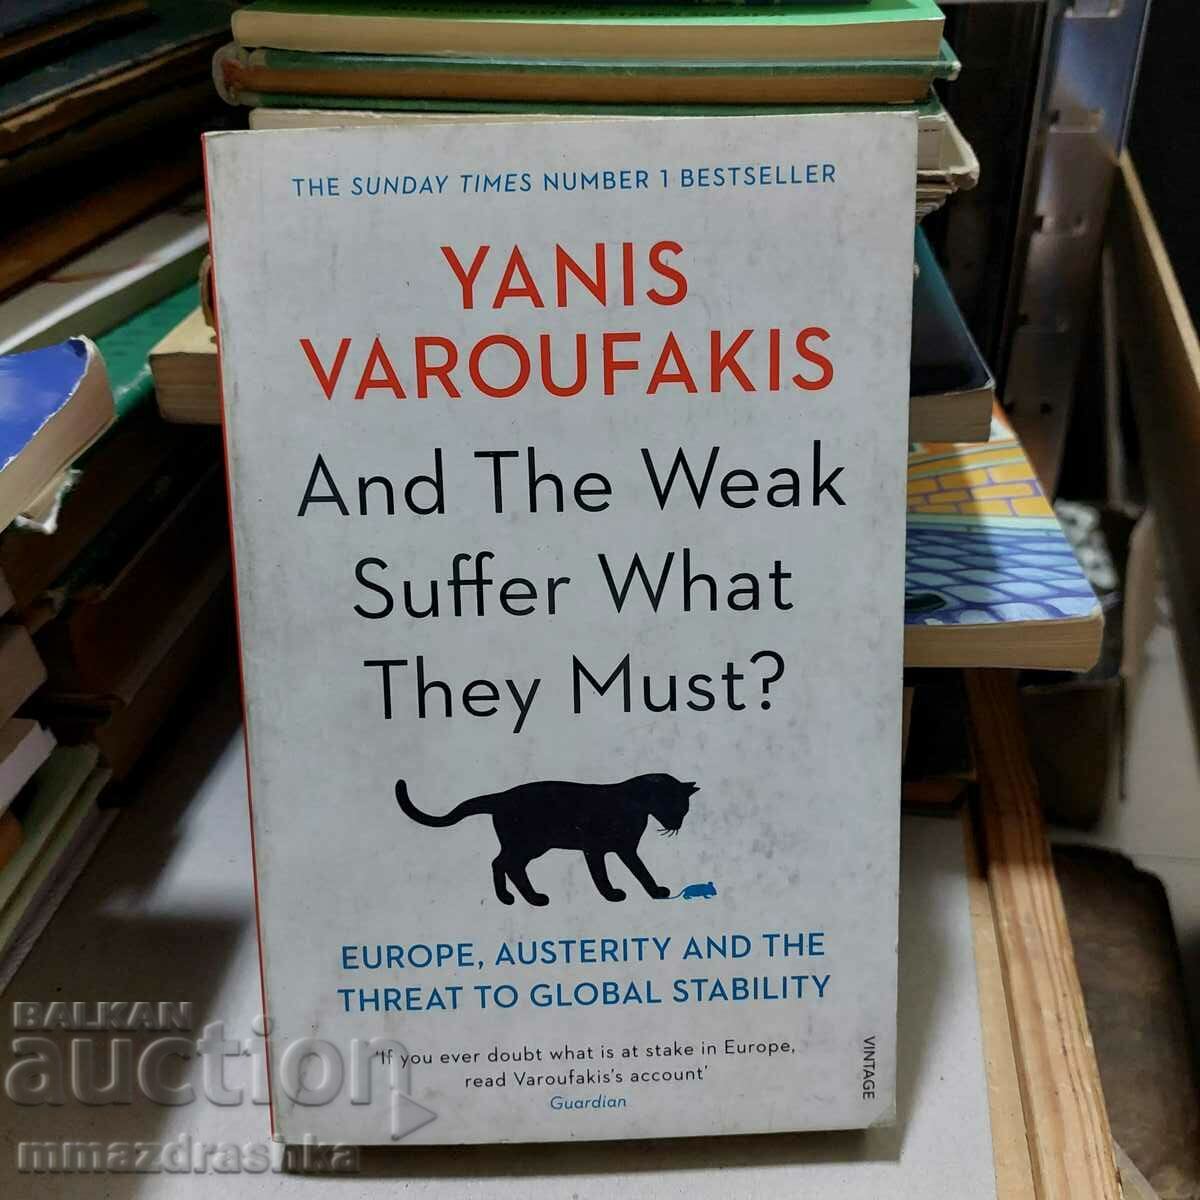 Și cei slabi suferă ce trebuie? Yanis Varoufakis